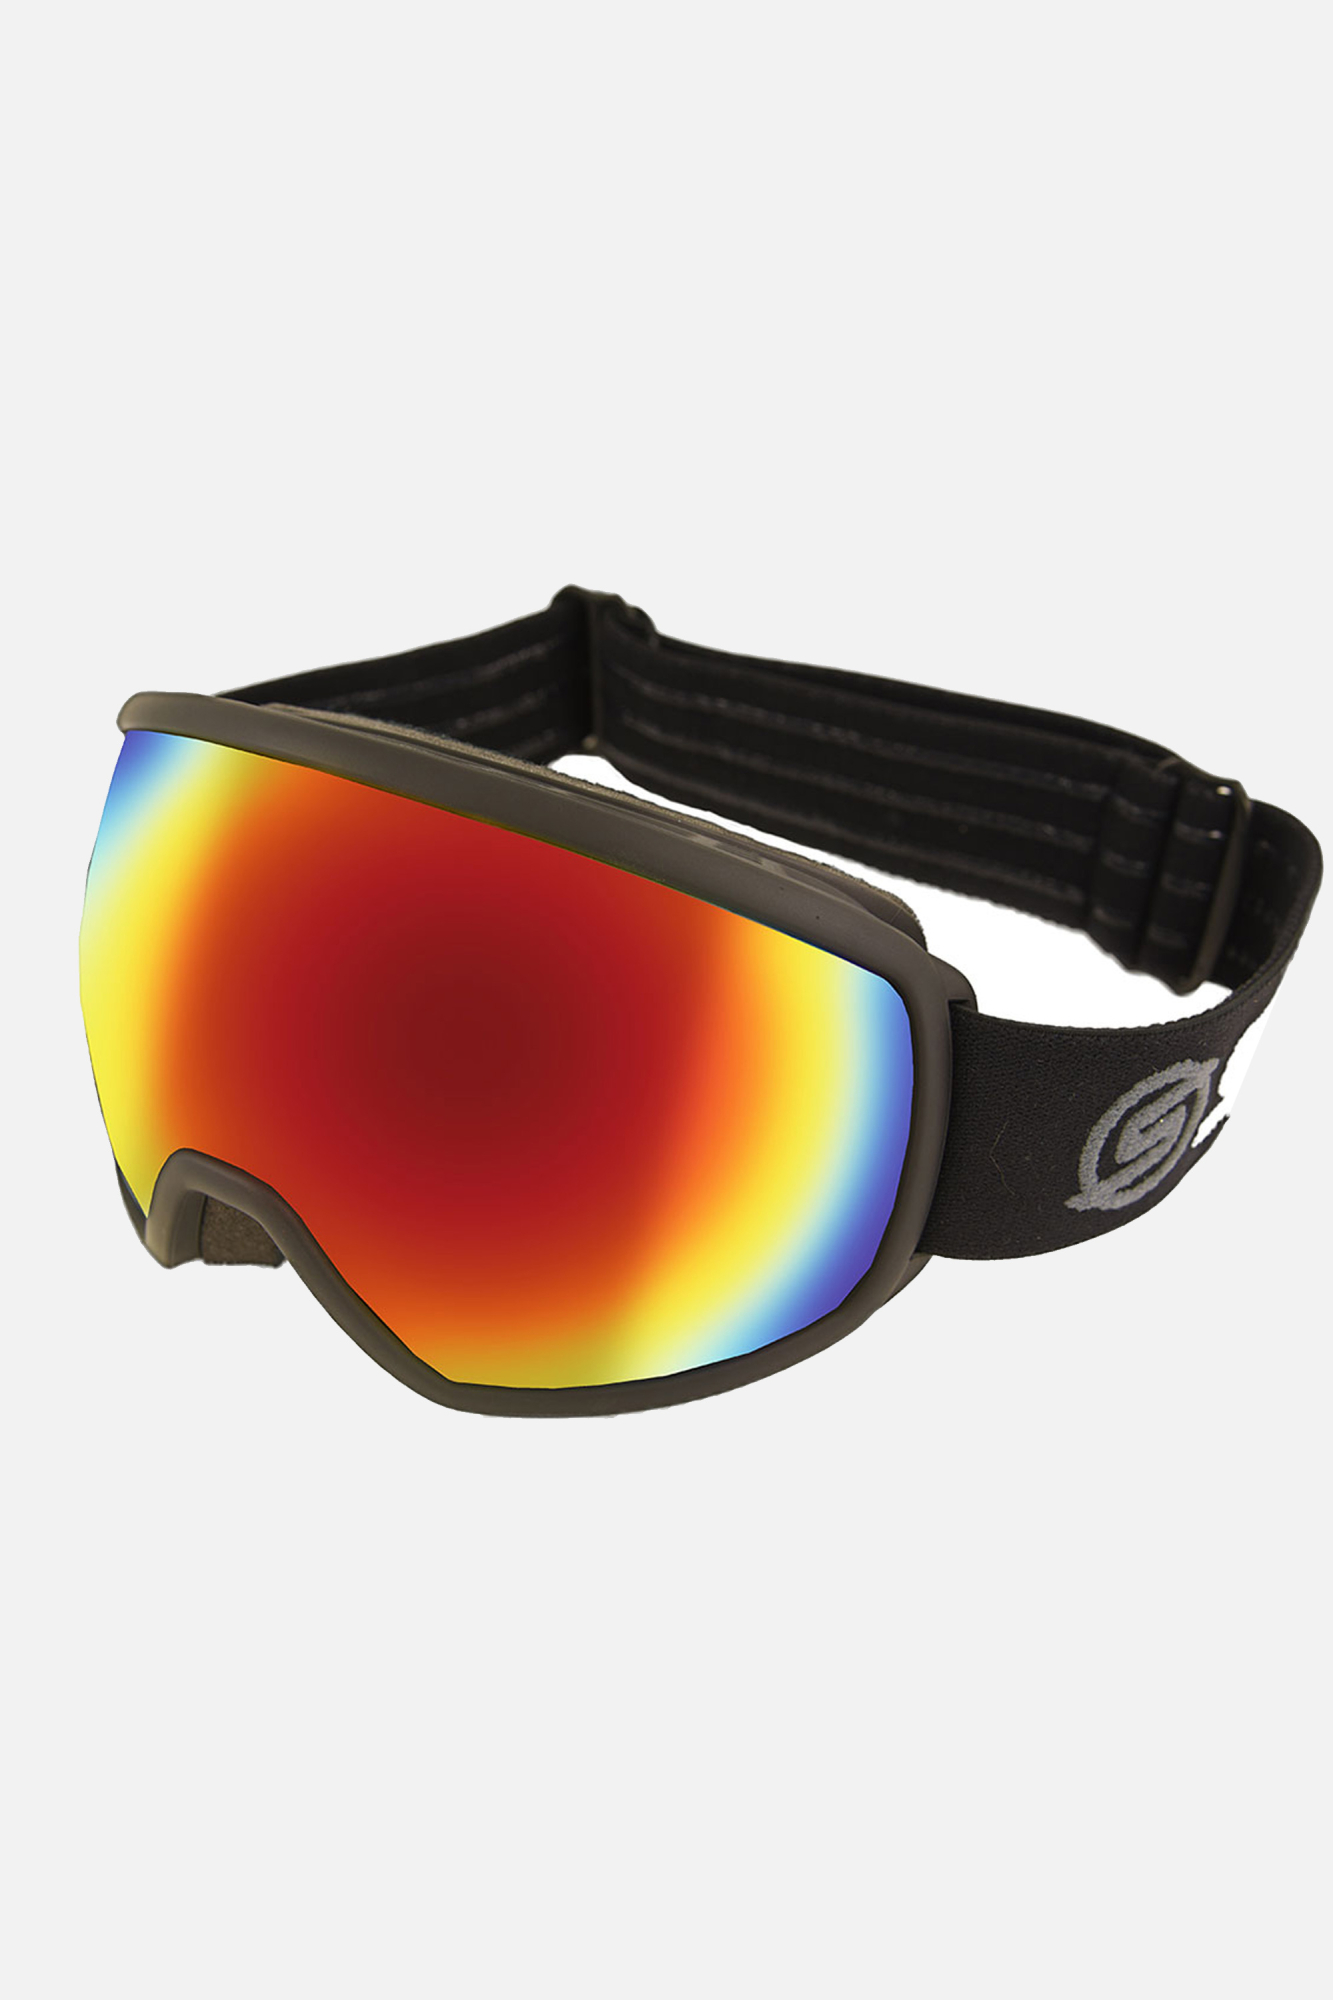 Surfanic Spectra Otg Goggle Black - Size: ONE